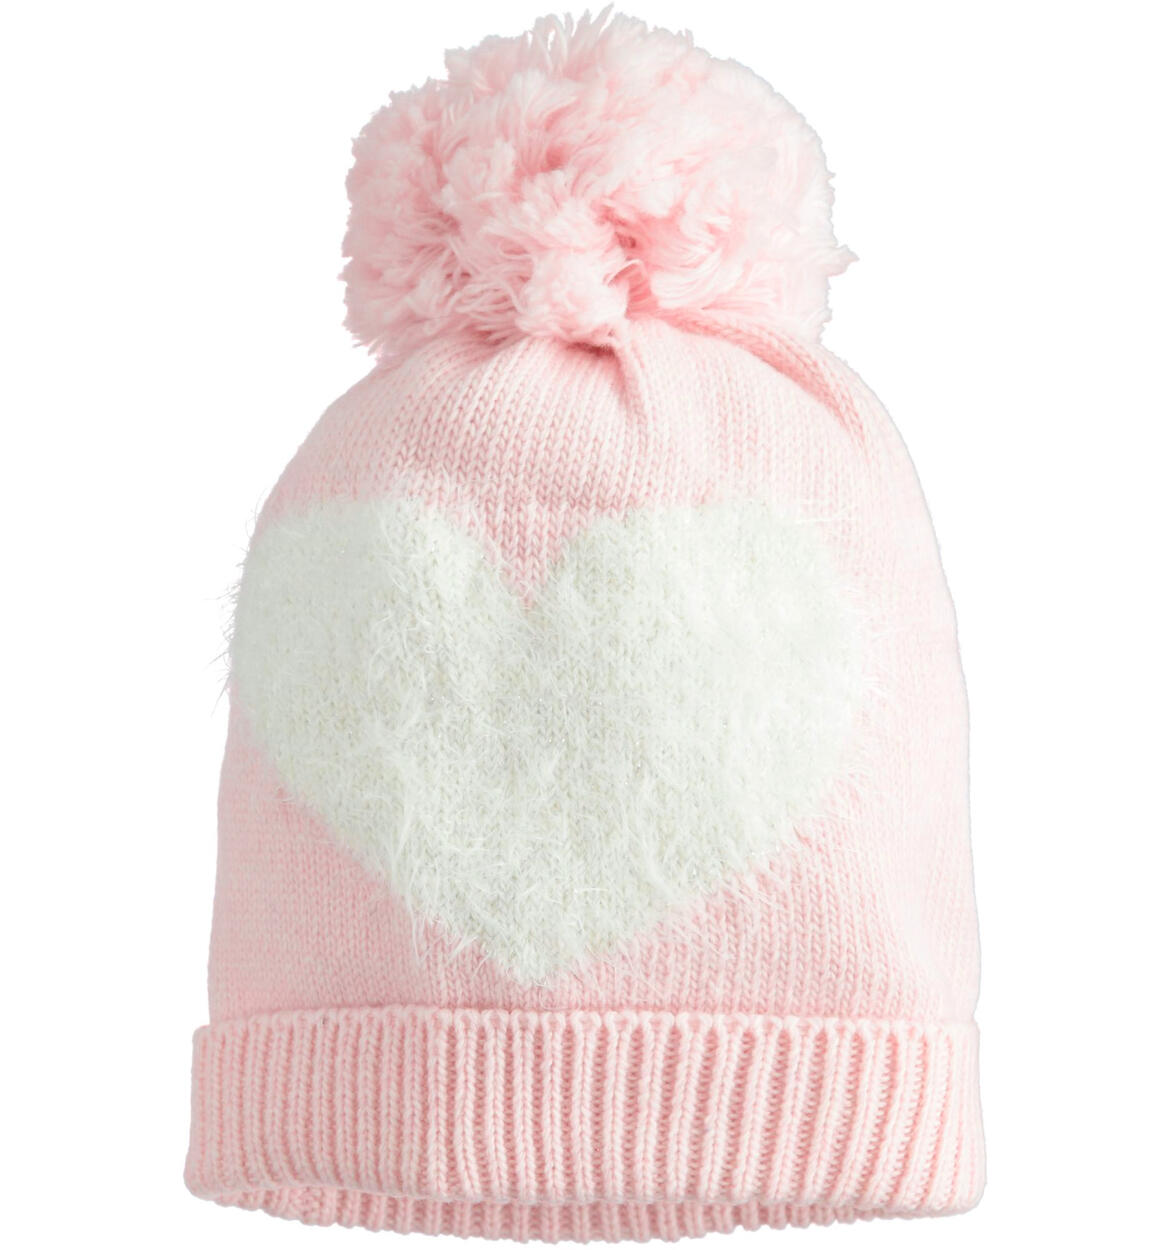 Cappello modello cuffia con cuore e pompon per neonata ROSA iDO